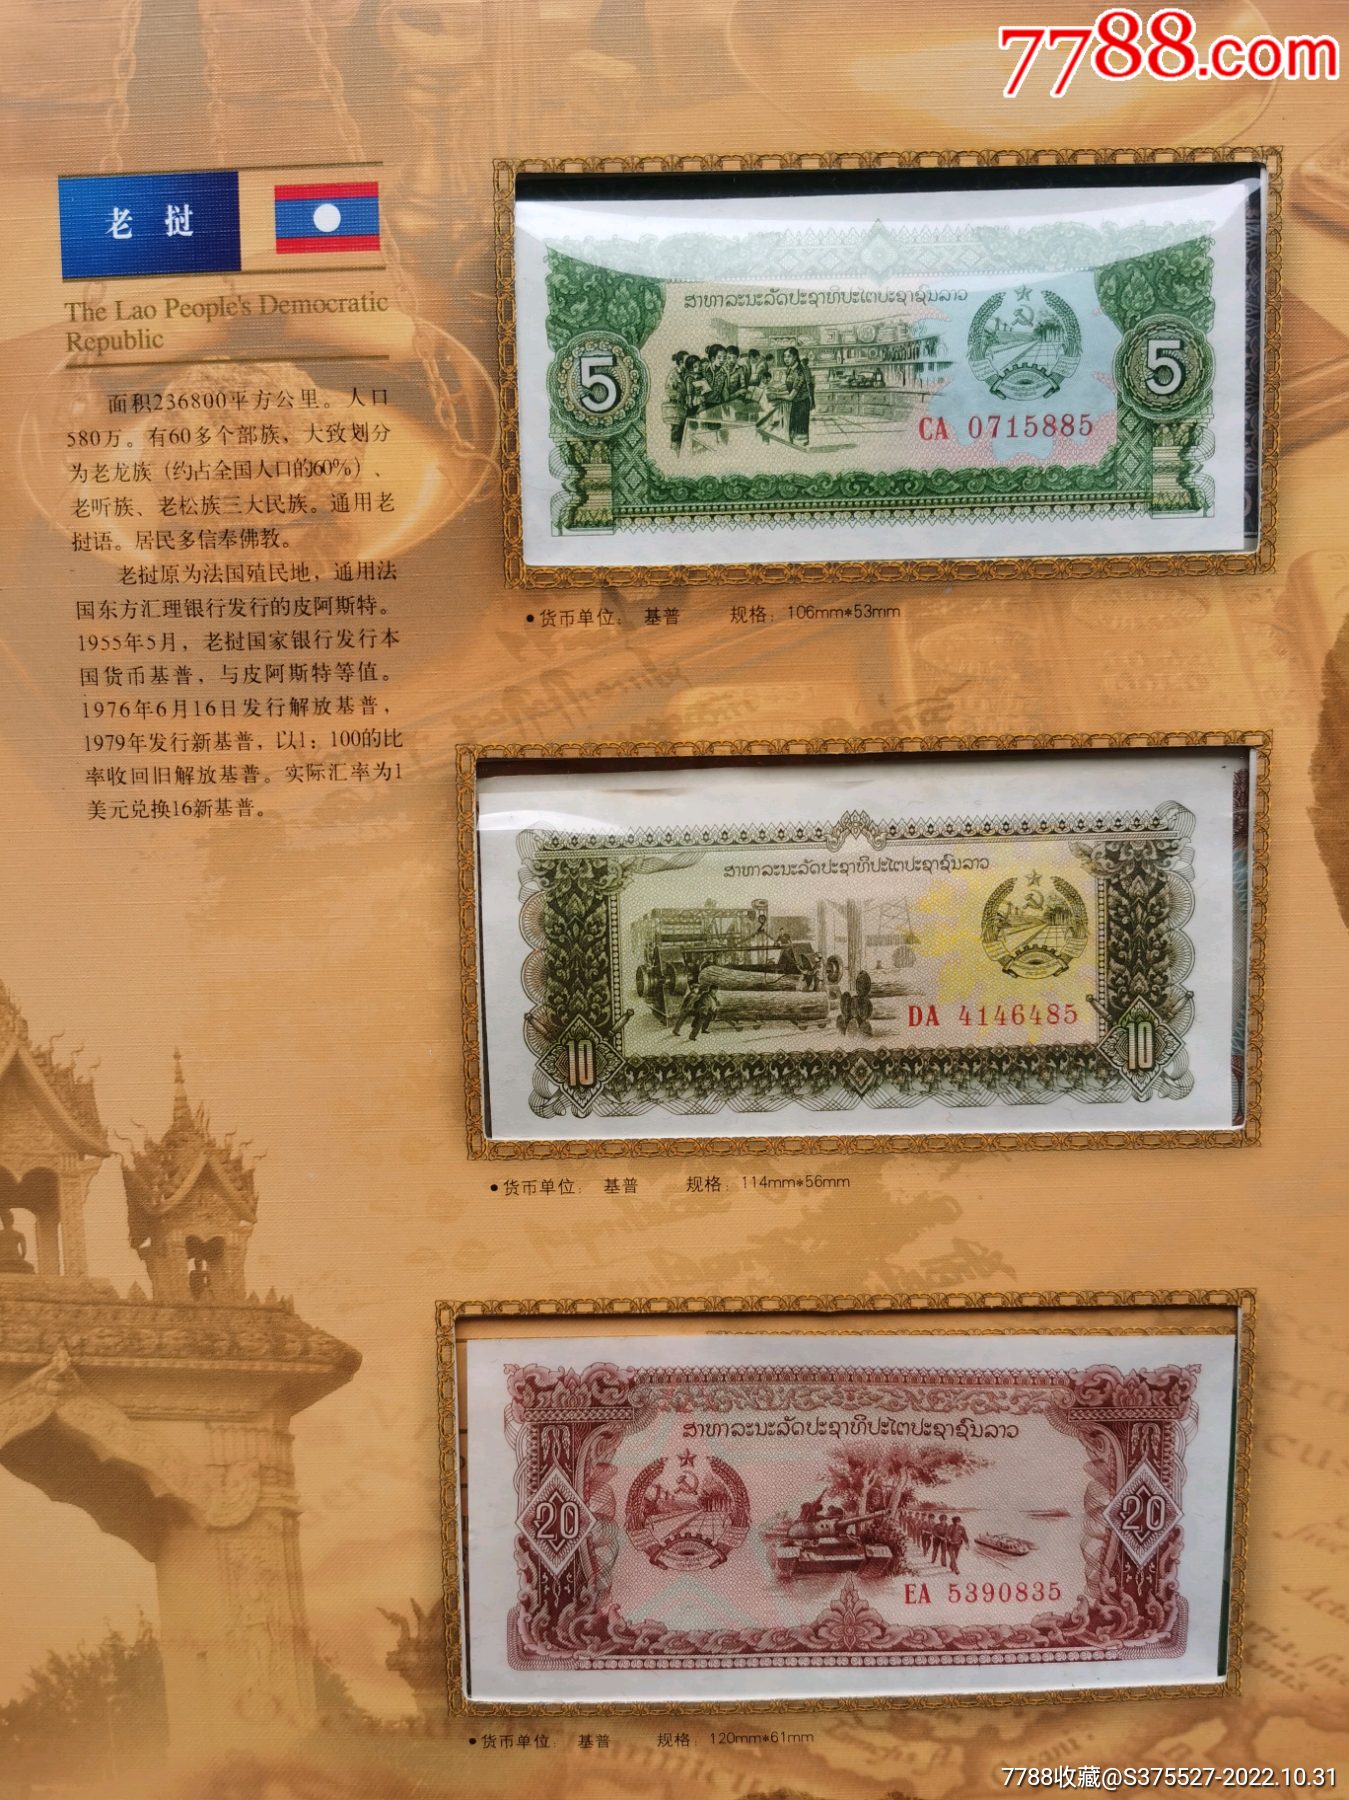 老挝发行新版货币了！遇到了千万不要当成假币… – Telegraph